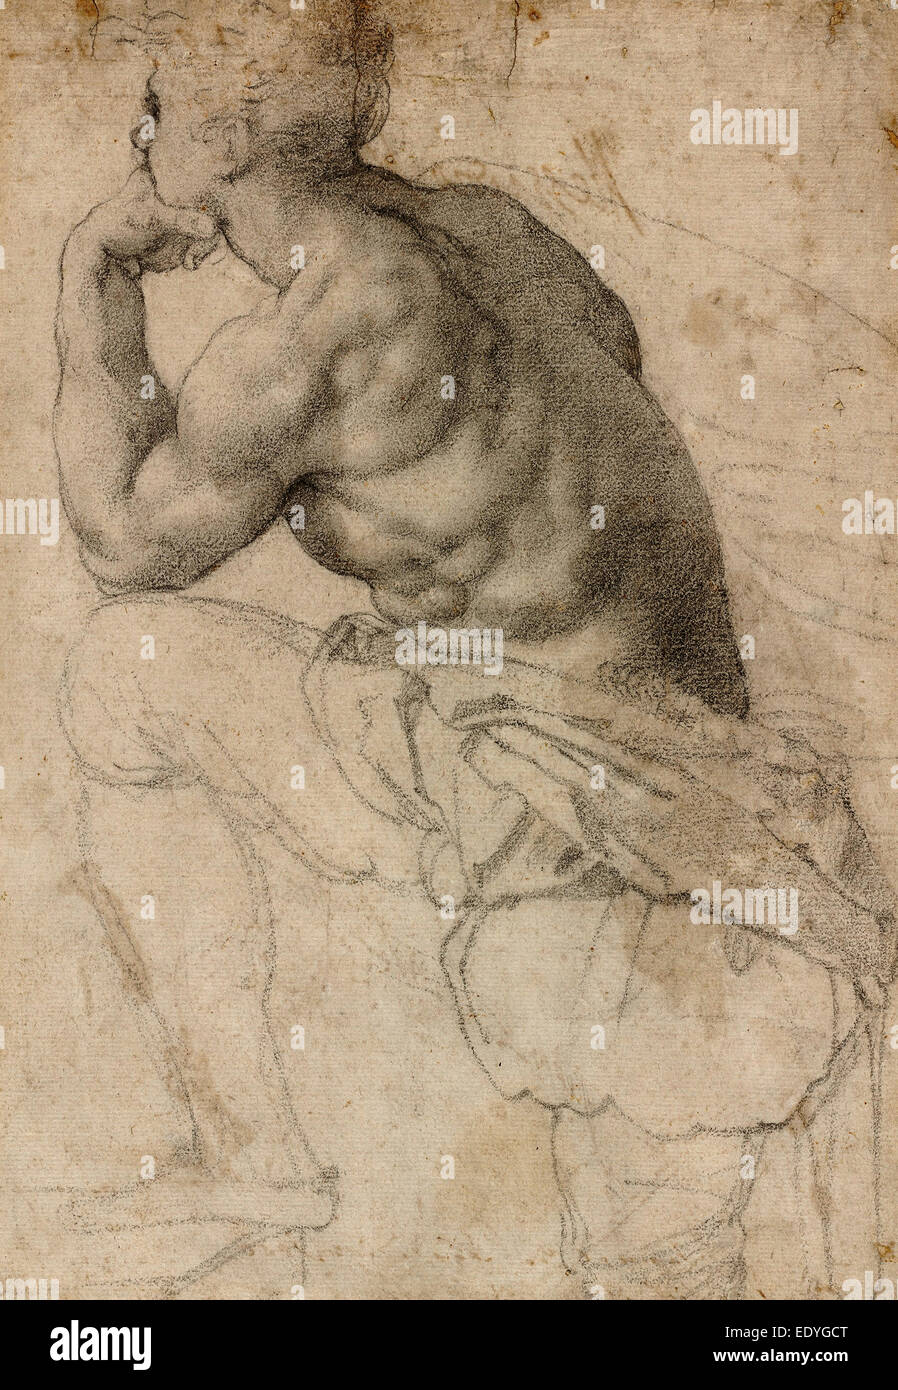 Alessandro Allori, A Pearl Diver, Italian, 1535 - 1607, c. 1570, black chalk on laid paper Stock Photo